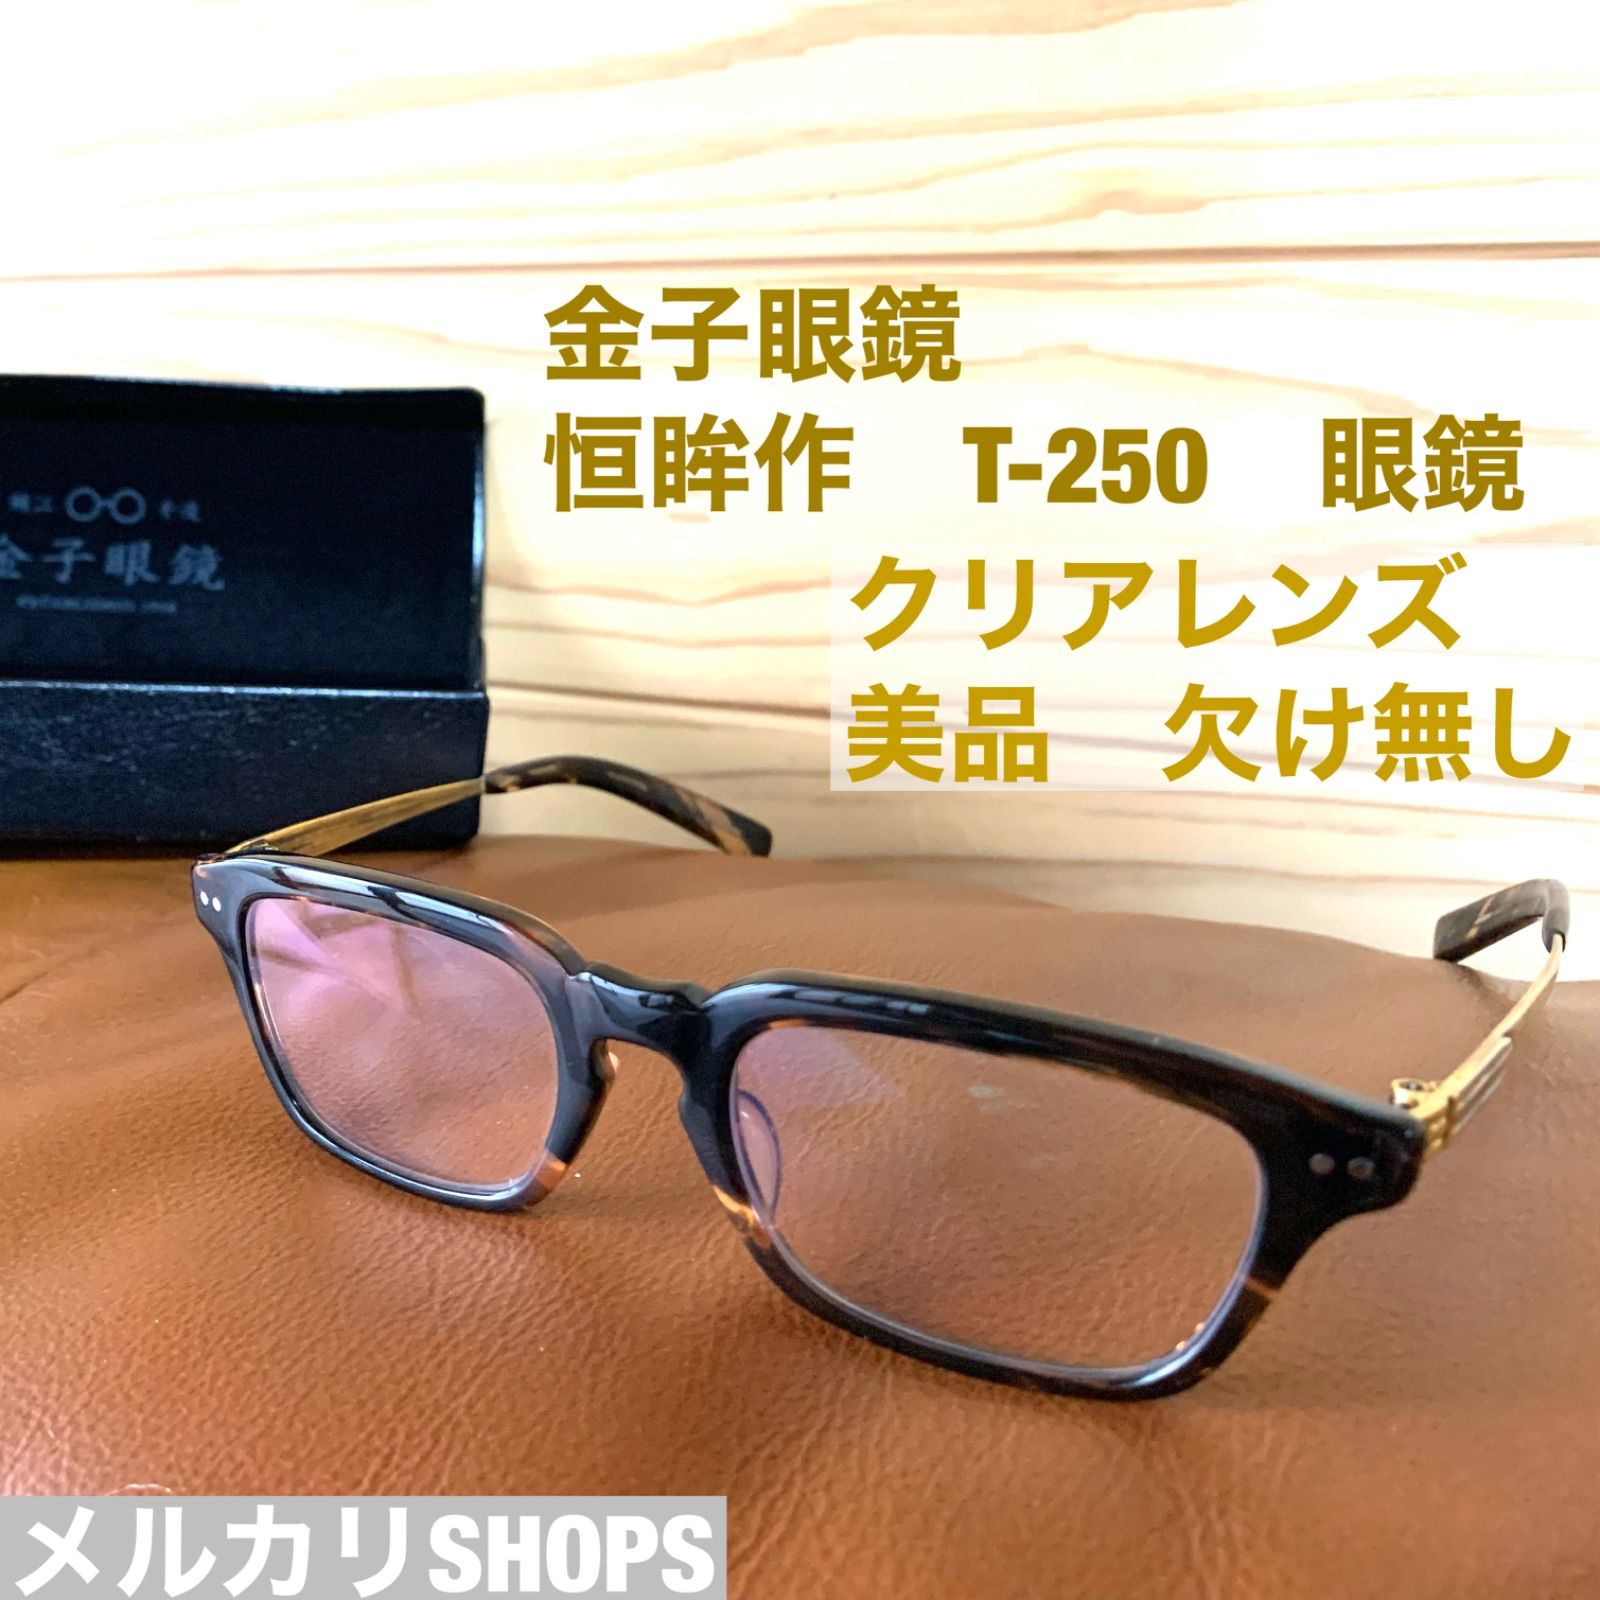 金子眼鏡 恒眸作 T-250 クリアレンズ度なし - メルカリ